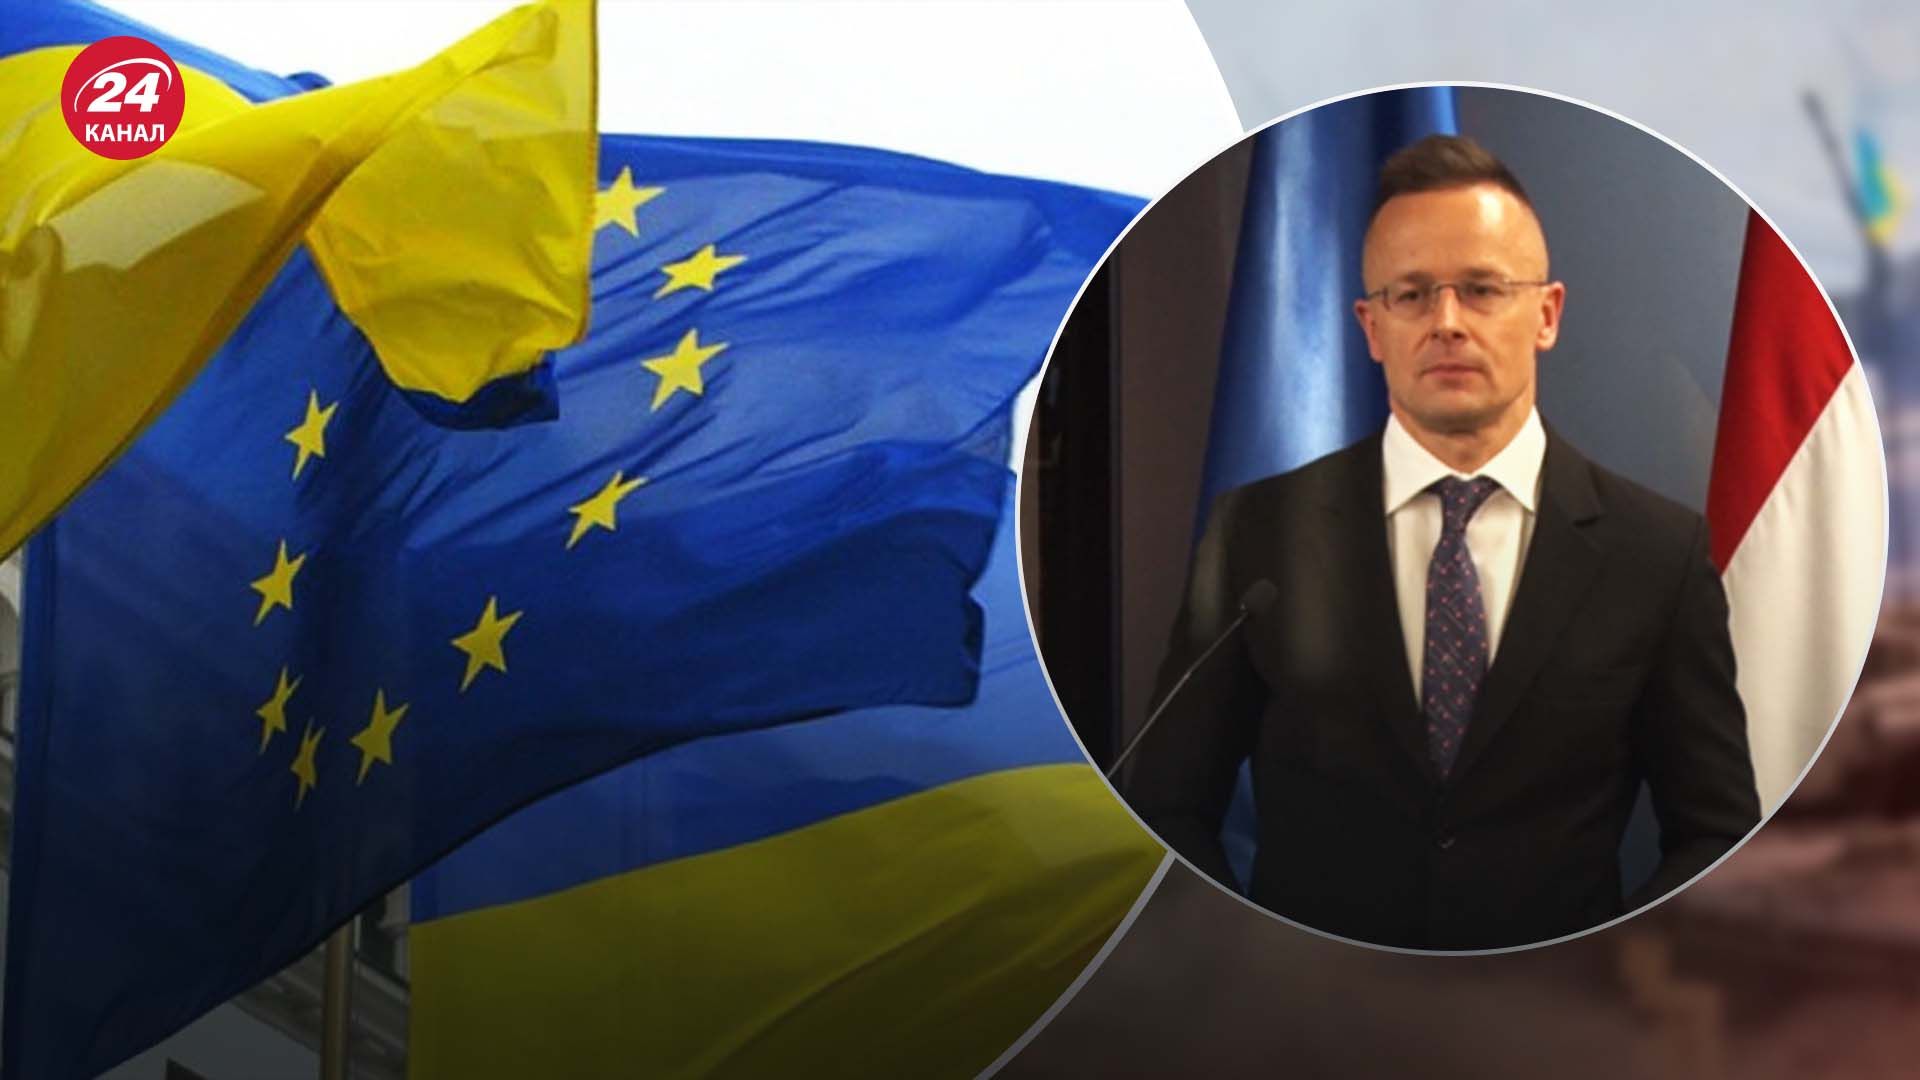 Сийярто ответил, поддерживает ли Венгрия вступление Украины в ЕС.